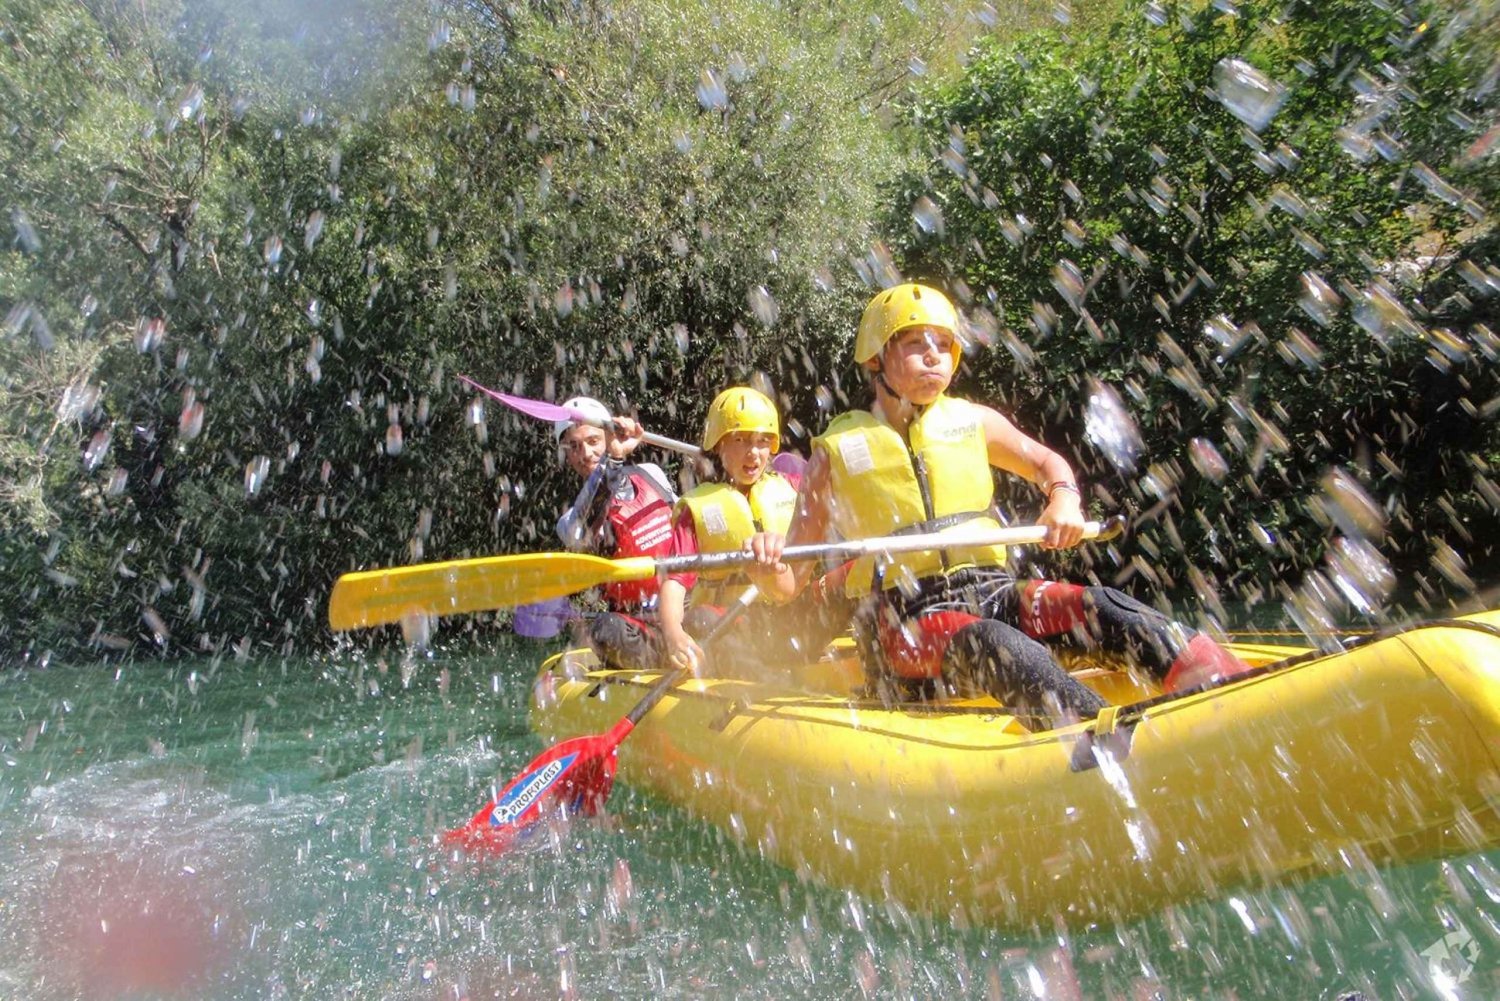 Rafting de meio dia no rio Cetina